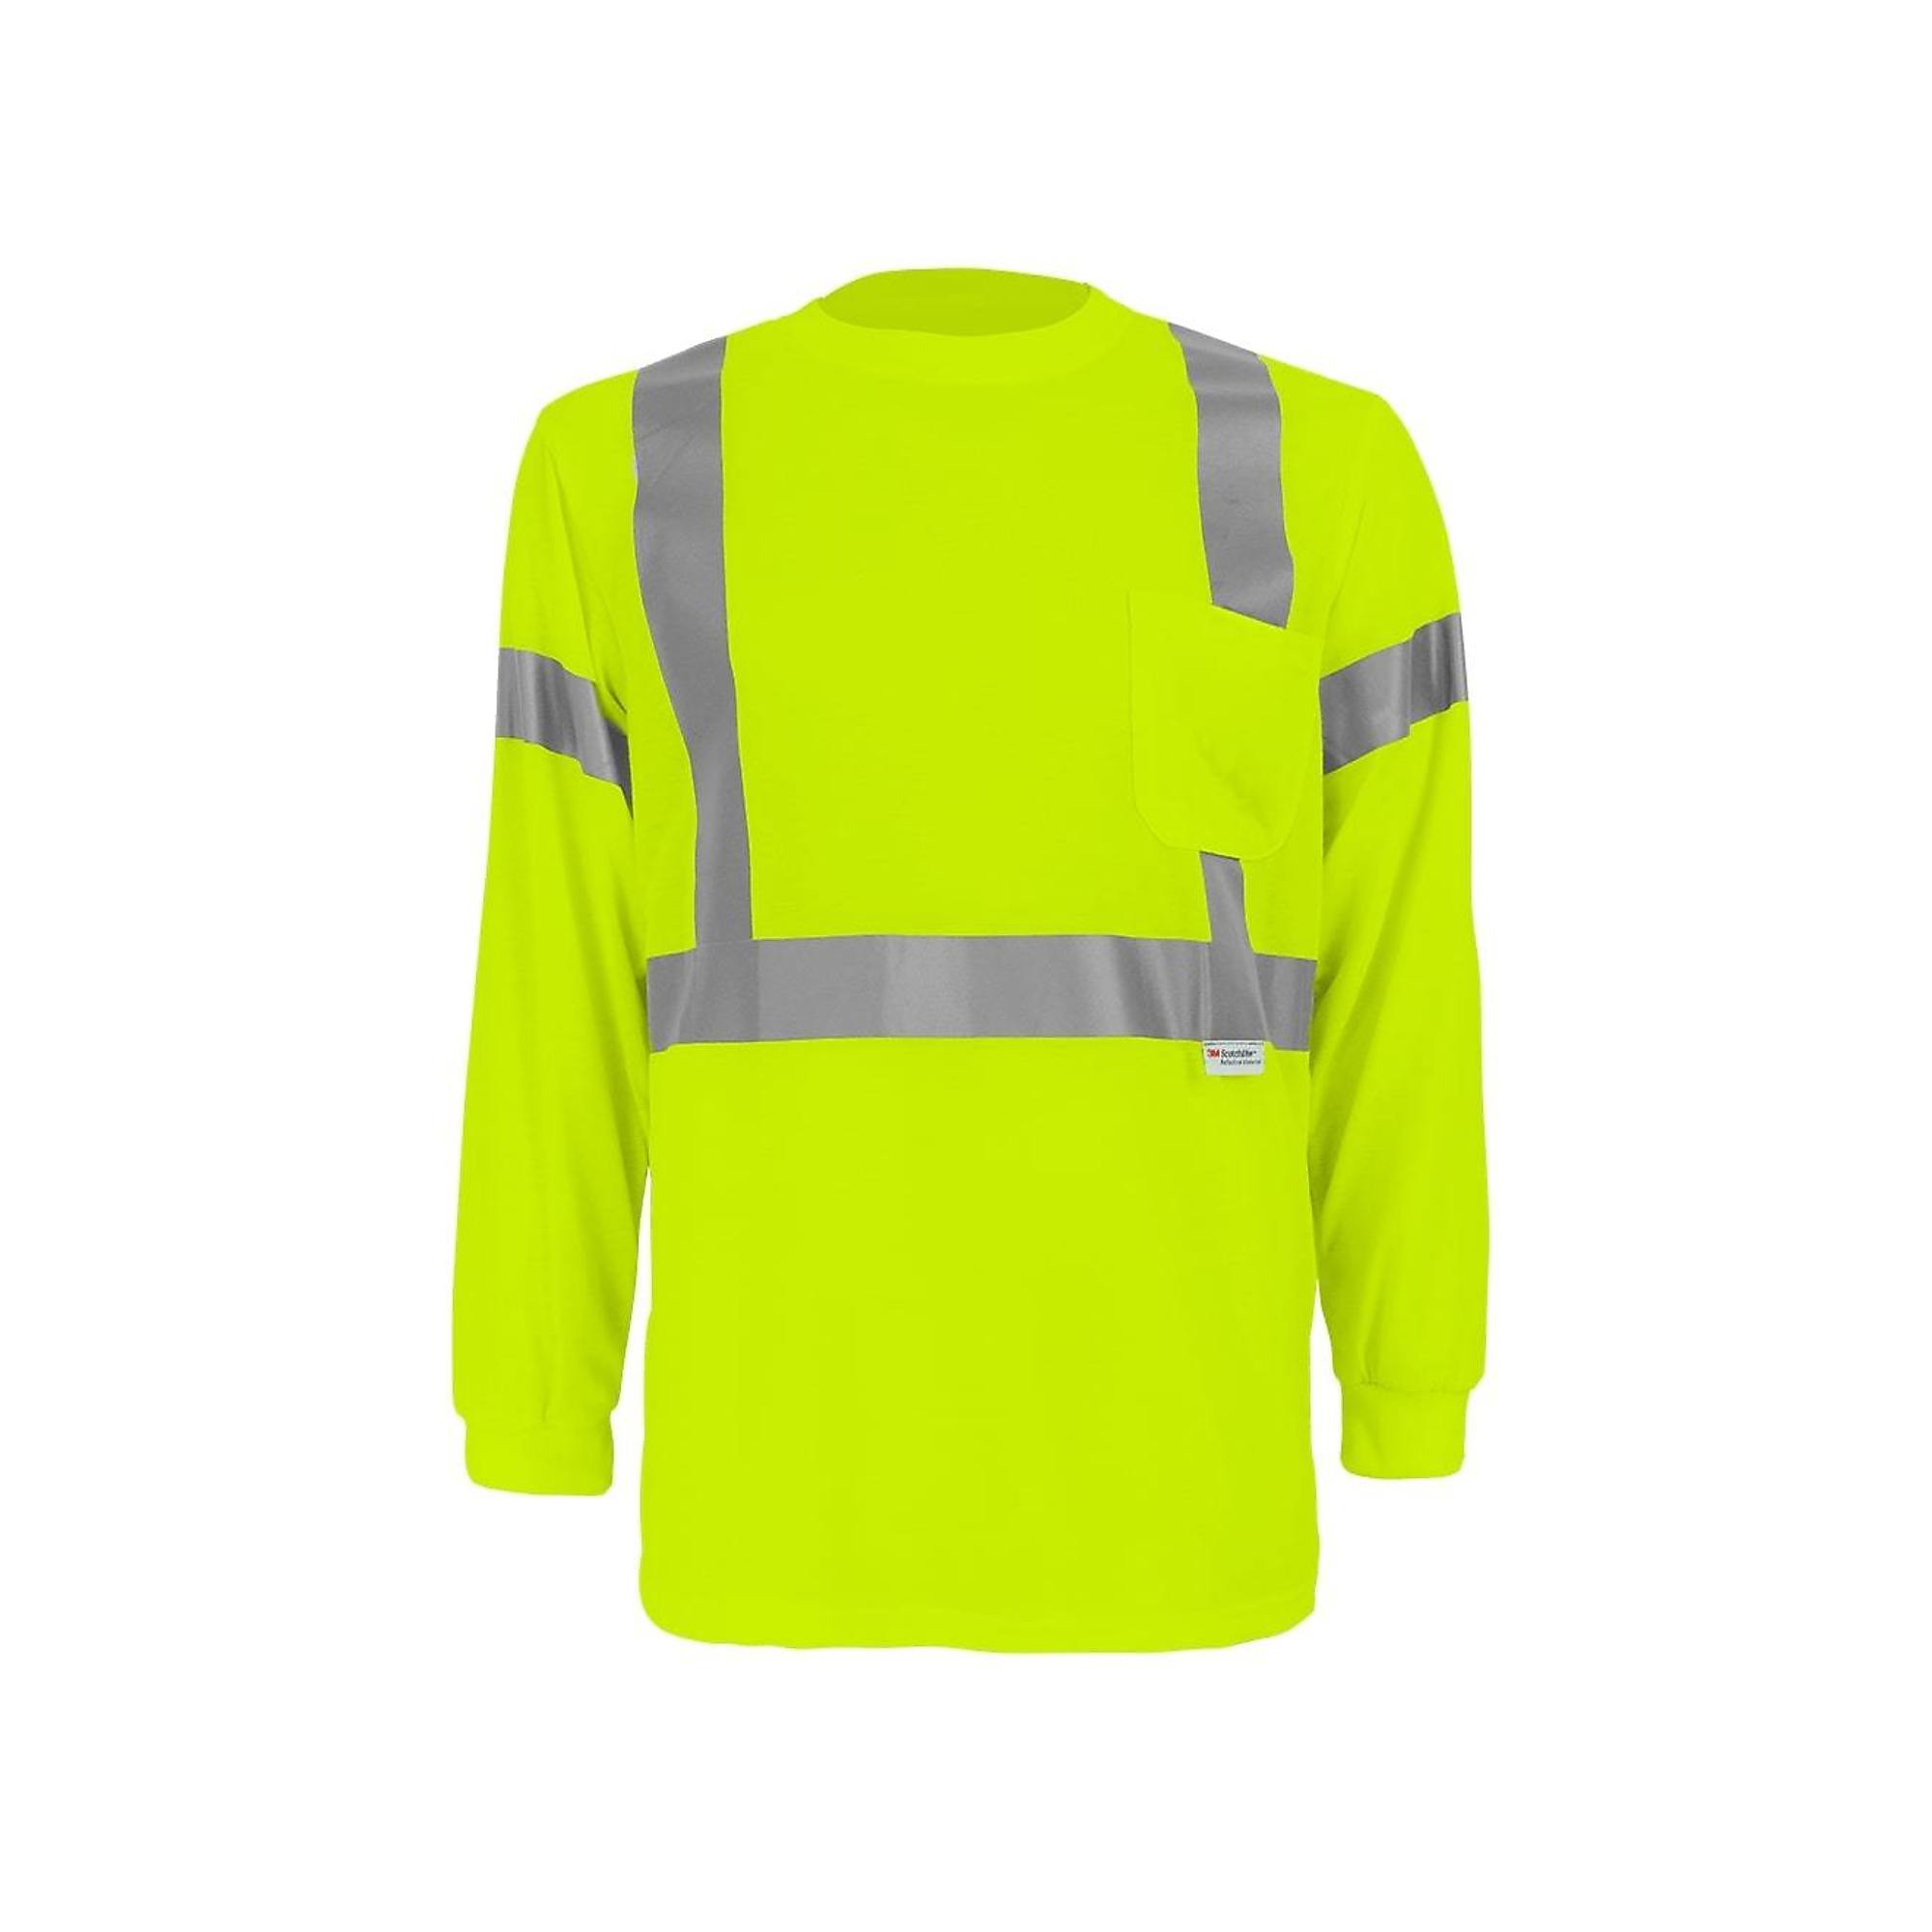 FrogWear, HV Ylw/Grn, Class 3 Self-Wick,1 Pocket, Long-Sleeve Shirt, Size XL, Model GLO-008LS-XL